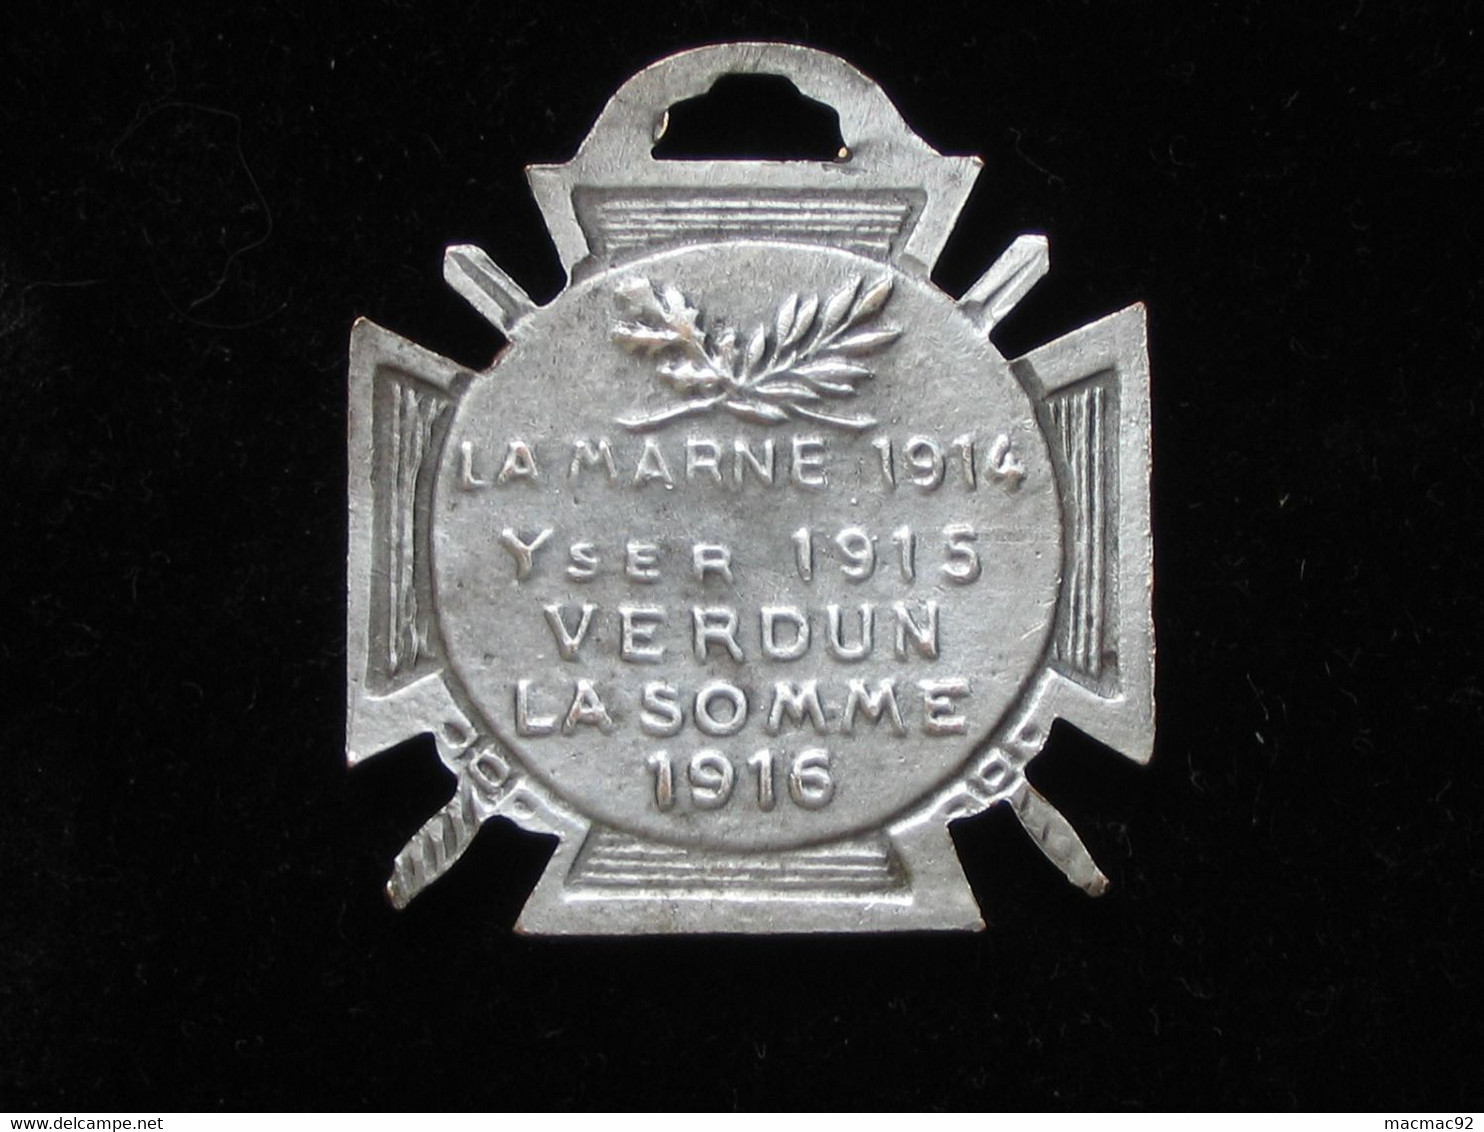 Décoration Journée Du Poilu 1915 - La Marne 1914 -Yser 1915 - Verdun - La Somme 1916   **** EN ACHAT IMMEDIAT **** - France